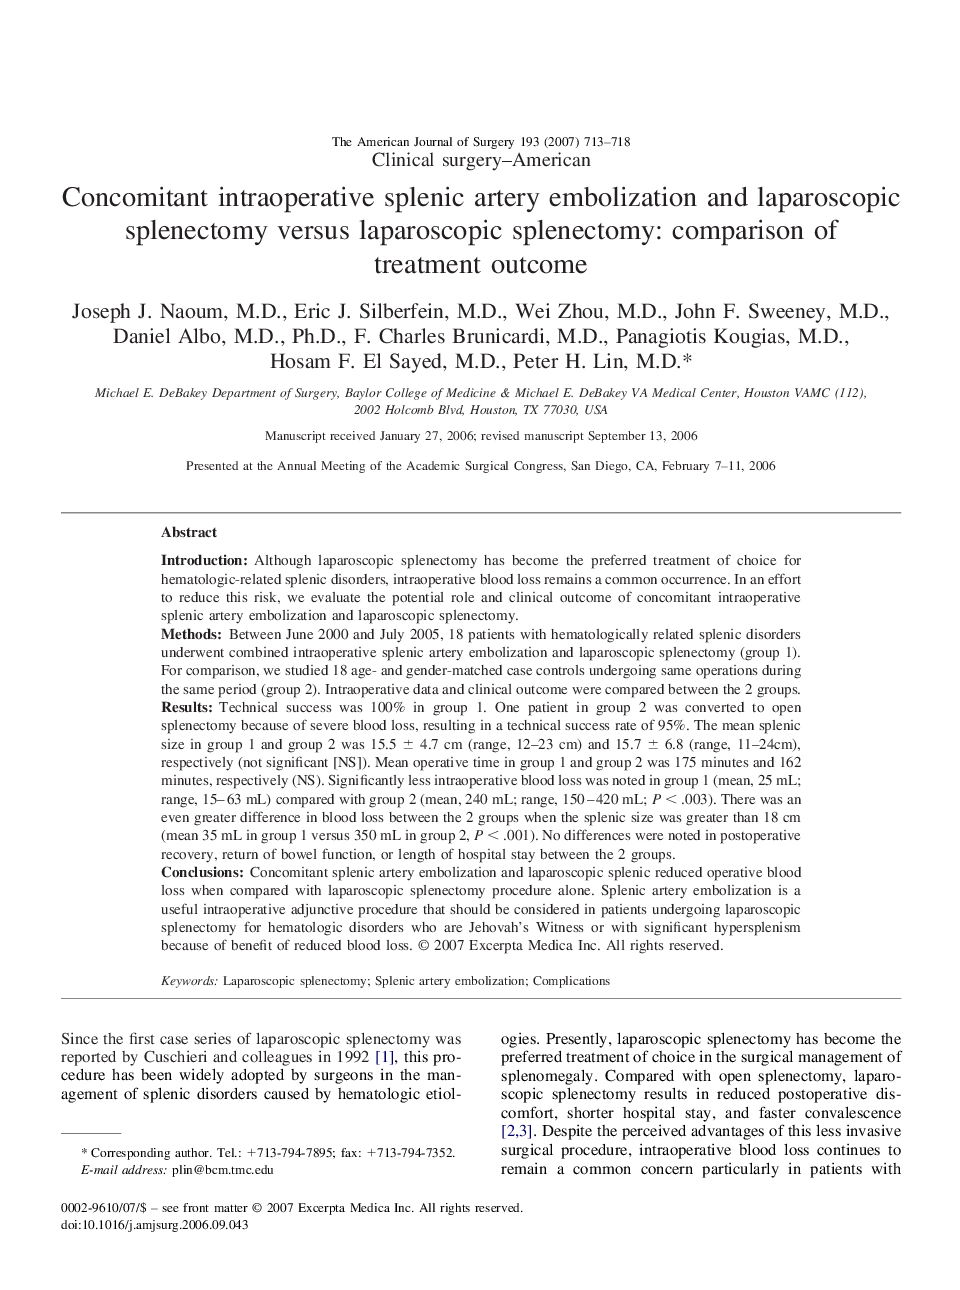 Concomitant intraoperative splenic artery embolization and laparoscopic splenectomy versus laparoscopic splenectomy: comparison of treatment outcome